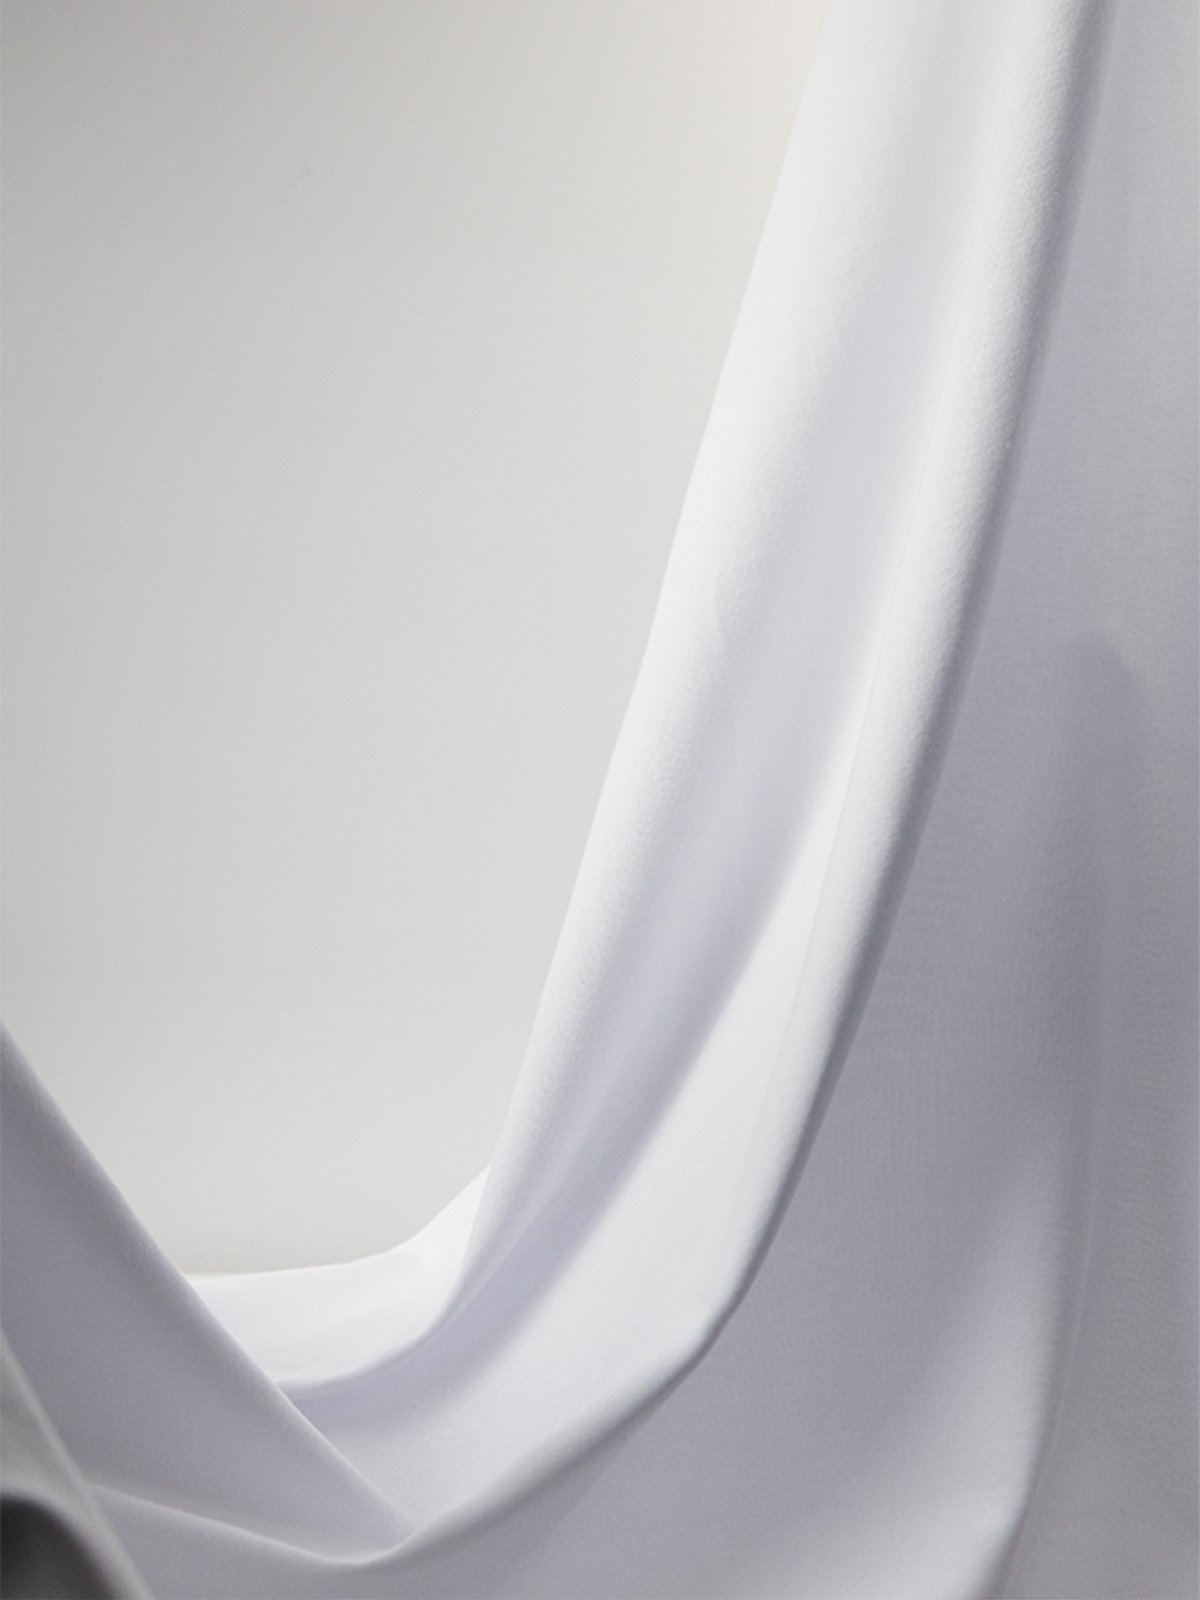 Rundhals Flügelärmel Unifarben Spitze Regelmäßig Hohe Elastizität Regelmäßige Passform Bluse für Damen